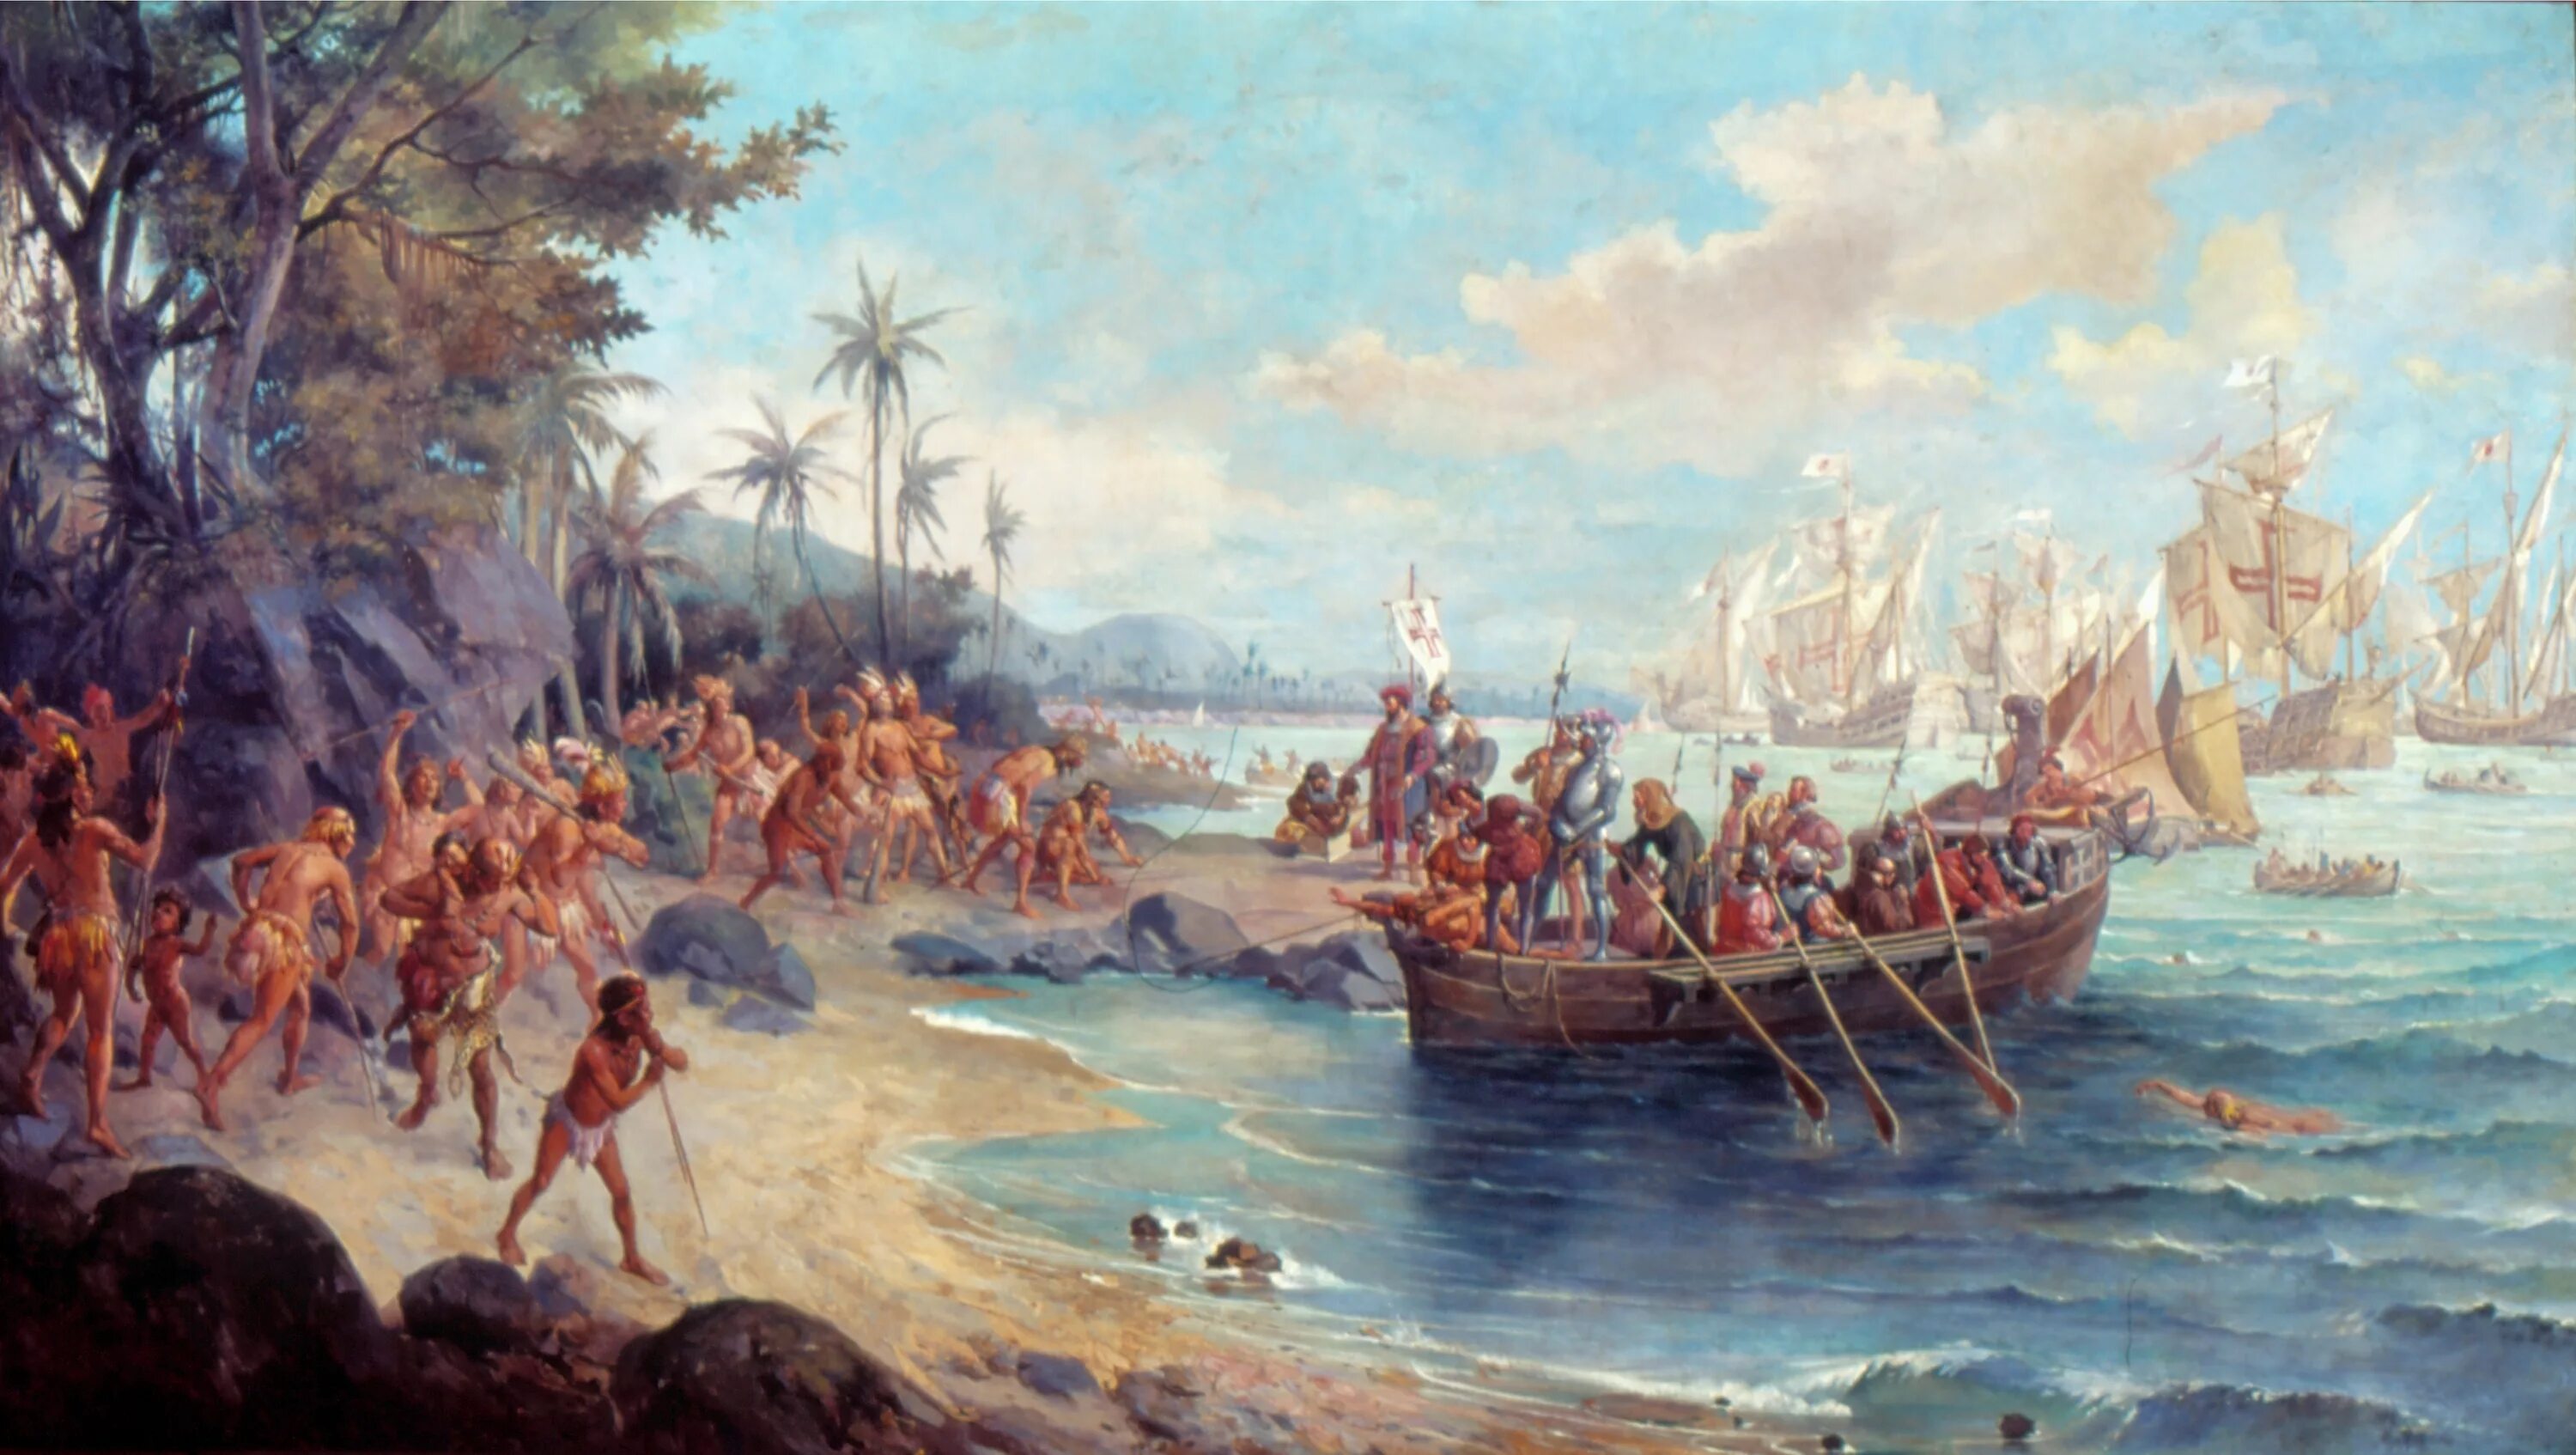 Открытие Бразилии Педру Кабрал. Педру Кабрал в 1500 году в Бразилии. Экспедиция Педру Кабрала. Колонизация Америки англичанами (1607—1775). Первый европеец посетивший карибские острова